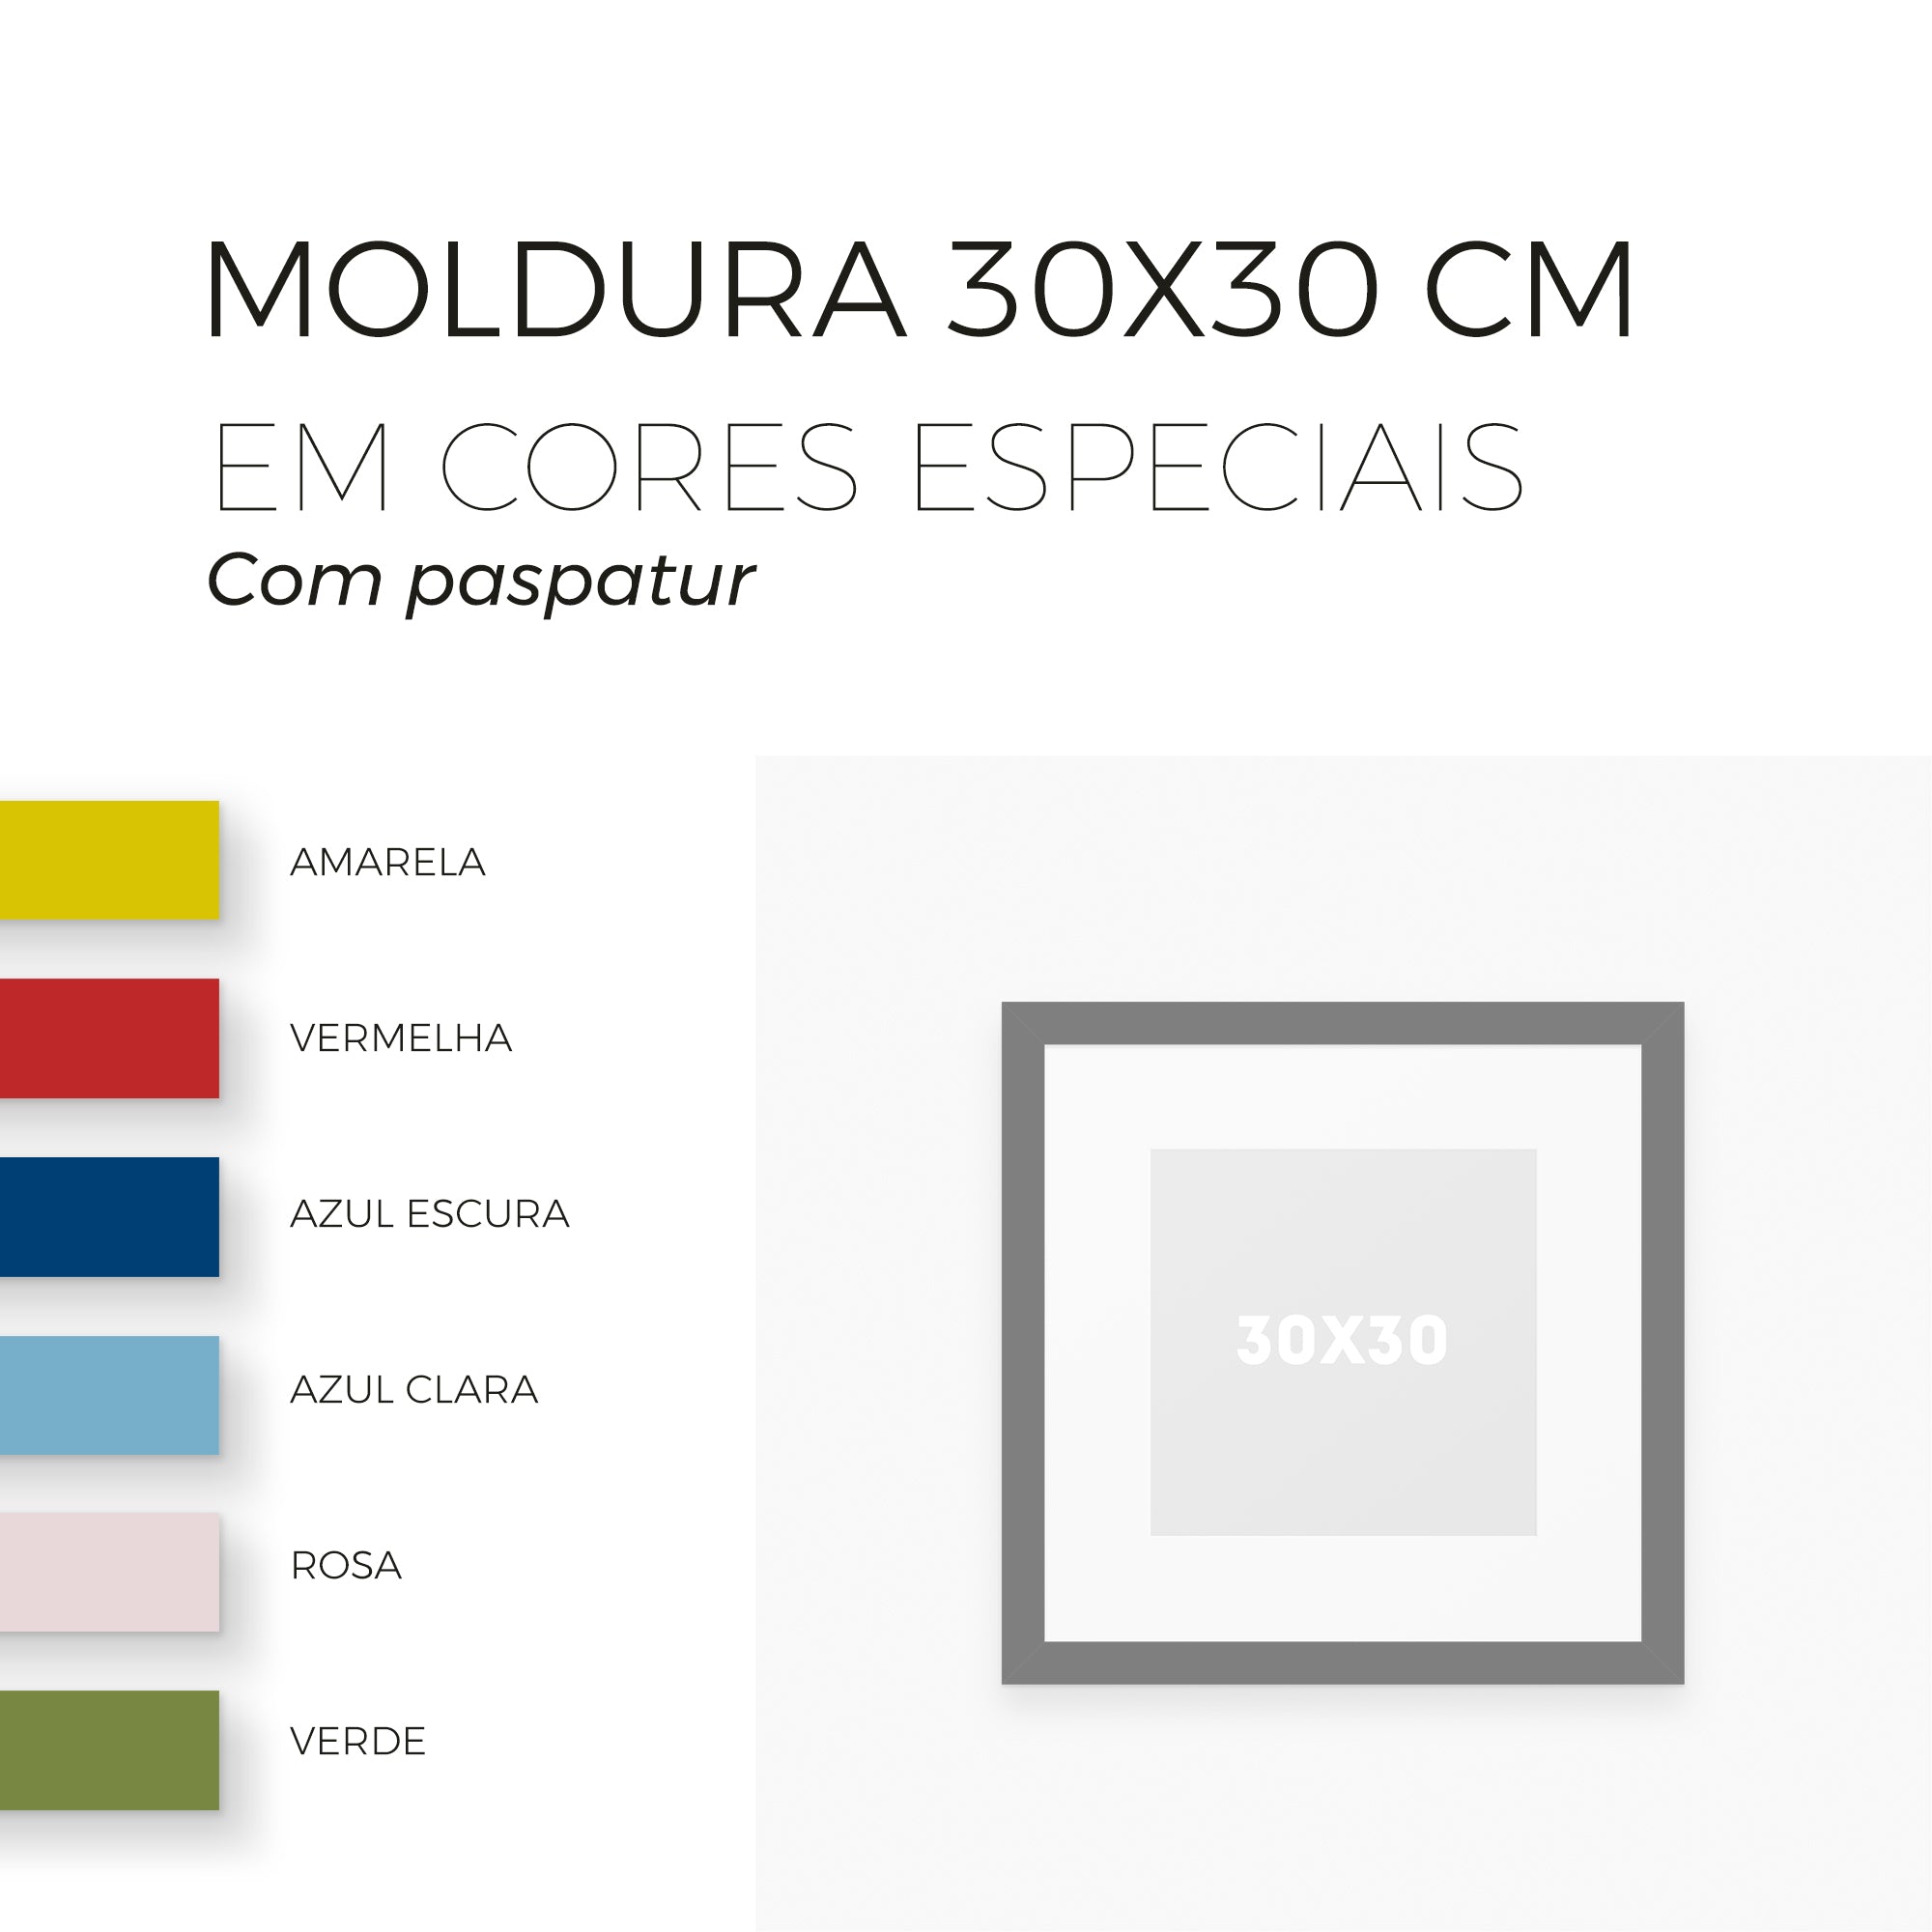 Moldura 30x30